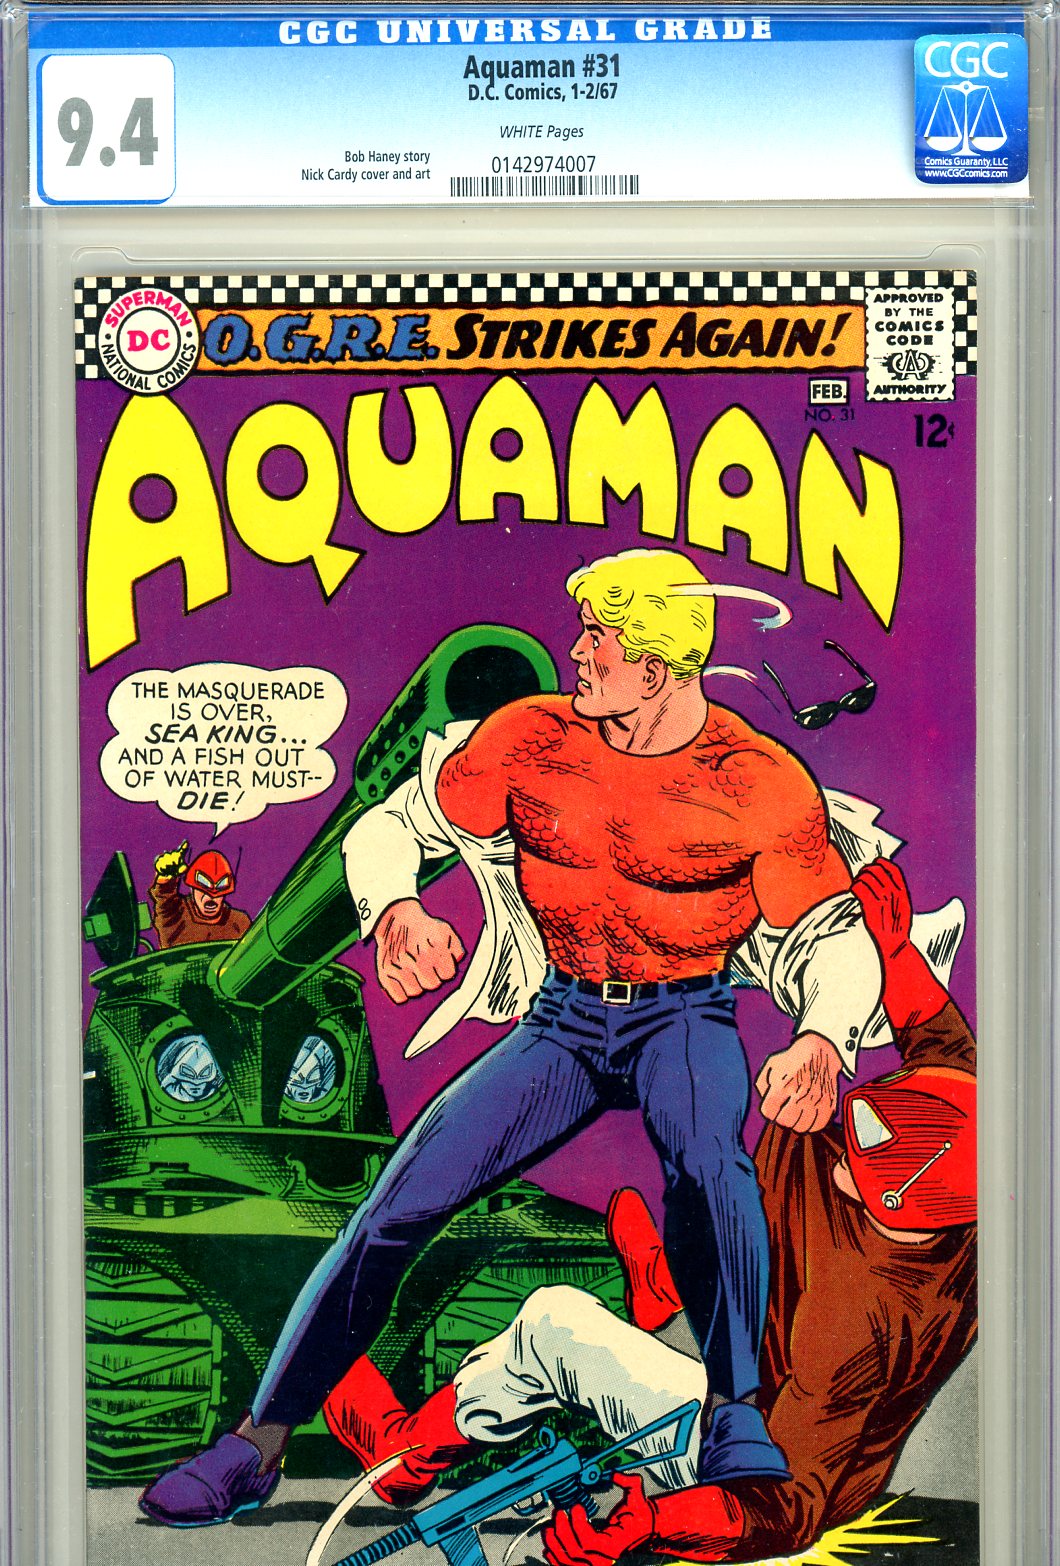 Aquaman #31 CGC 9.4 w